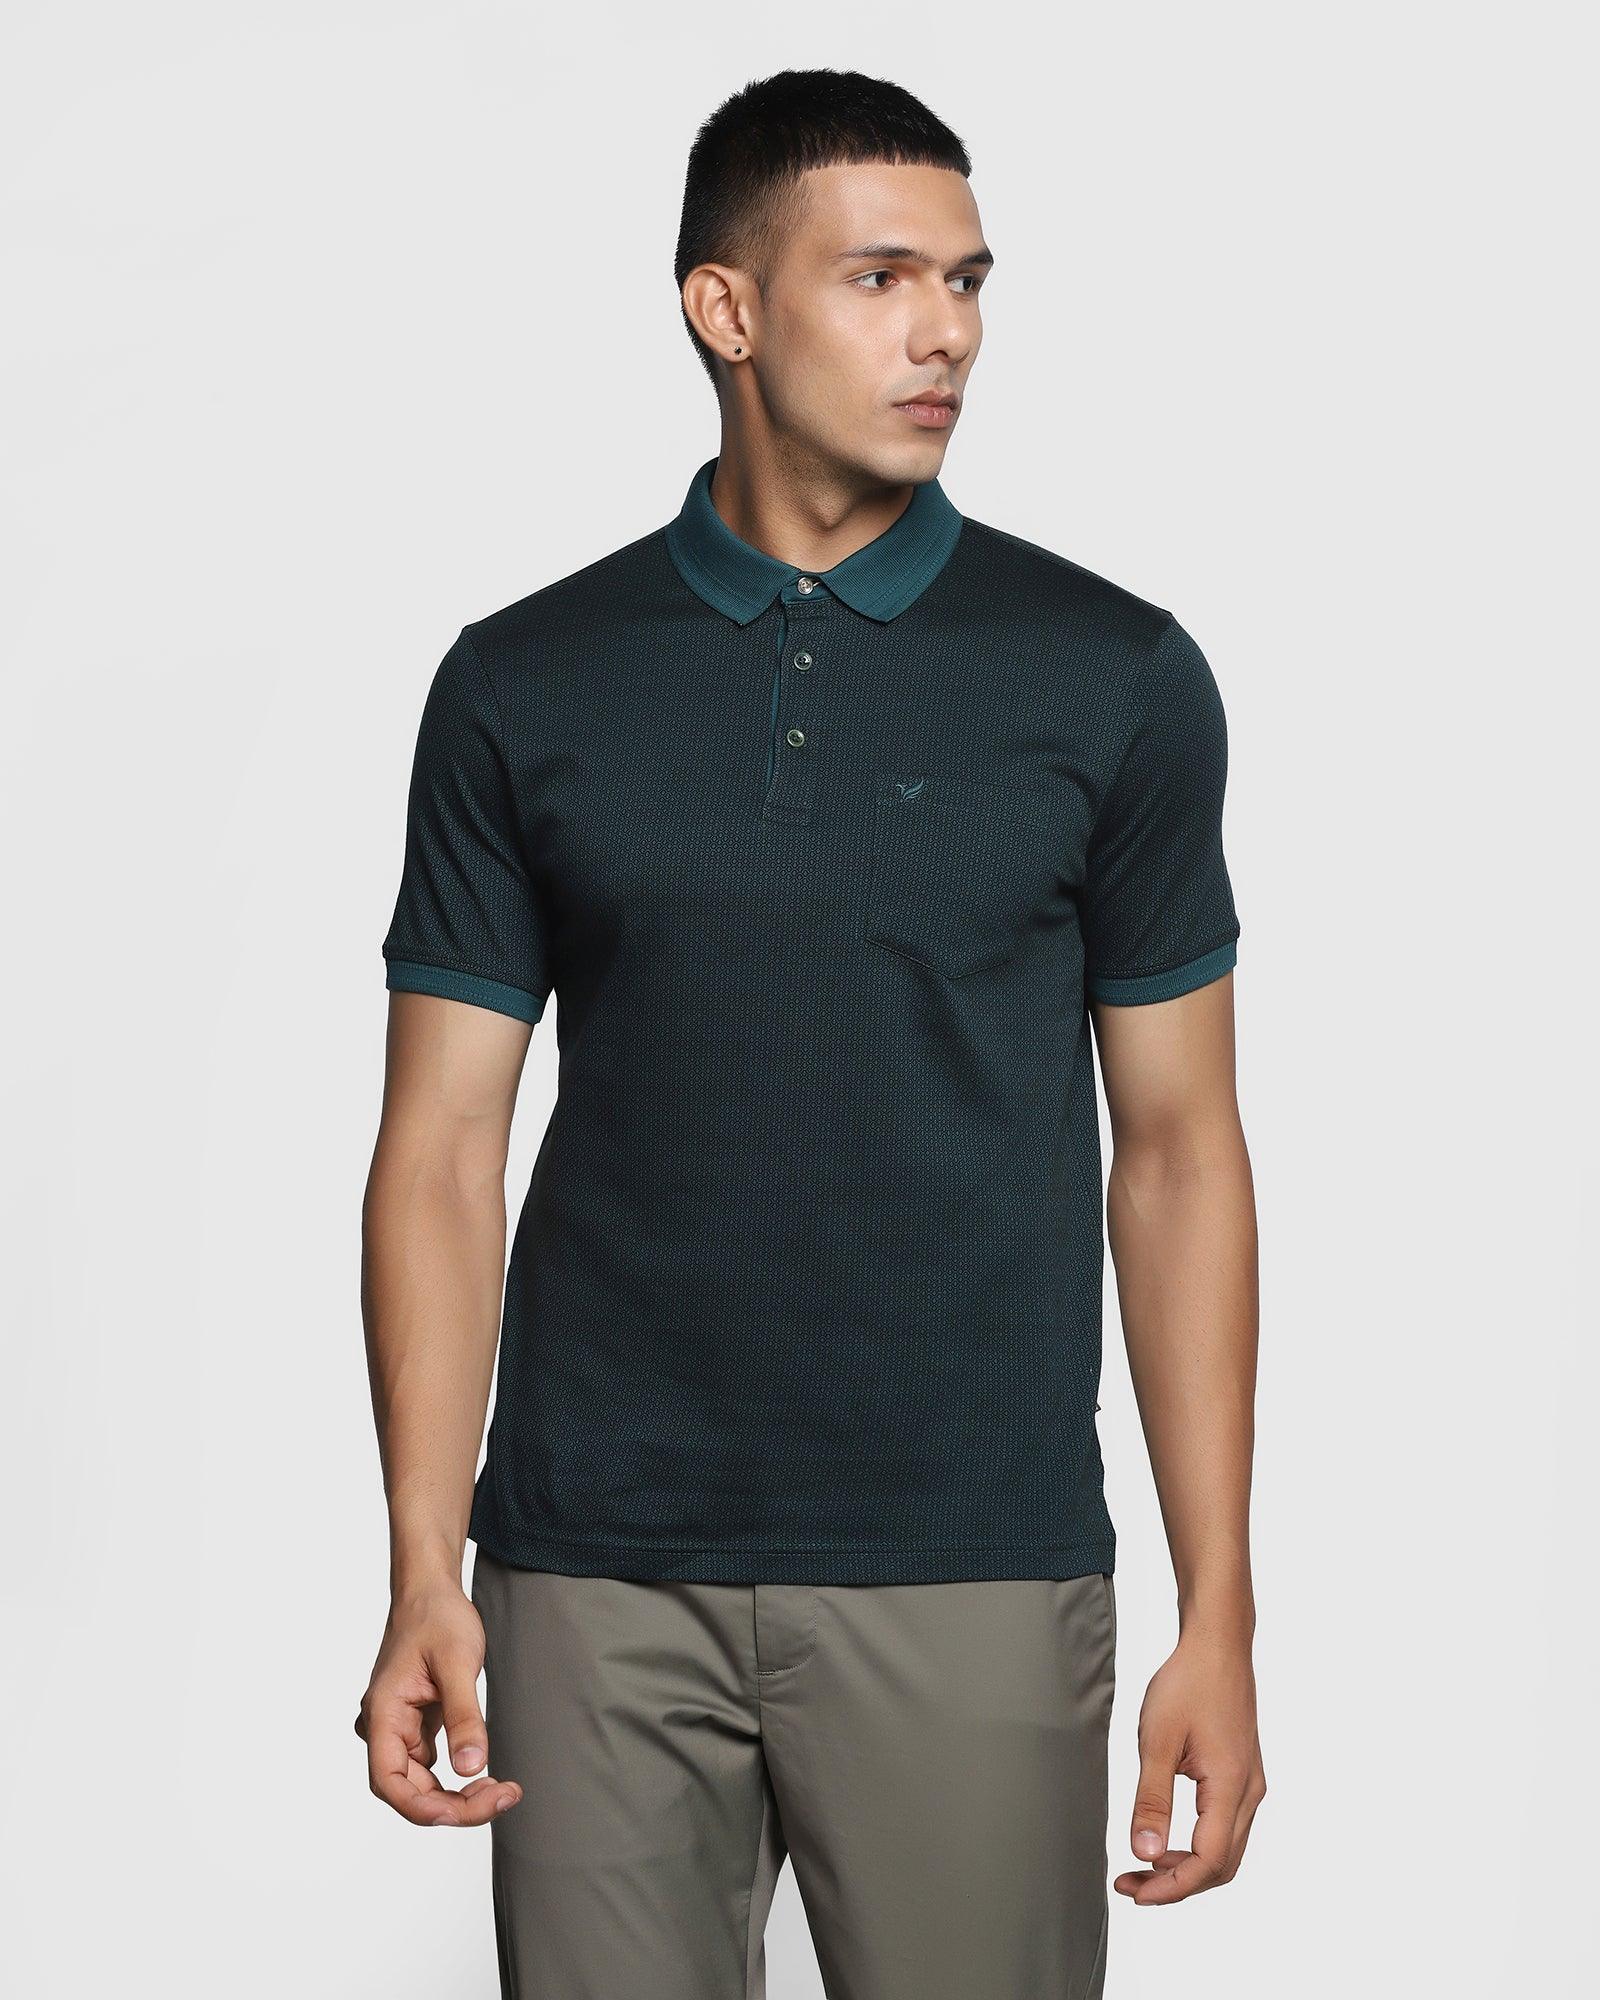 Polo Teal Green Printed T Shirt - Carson